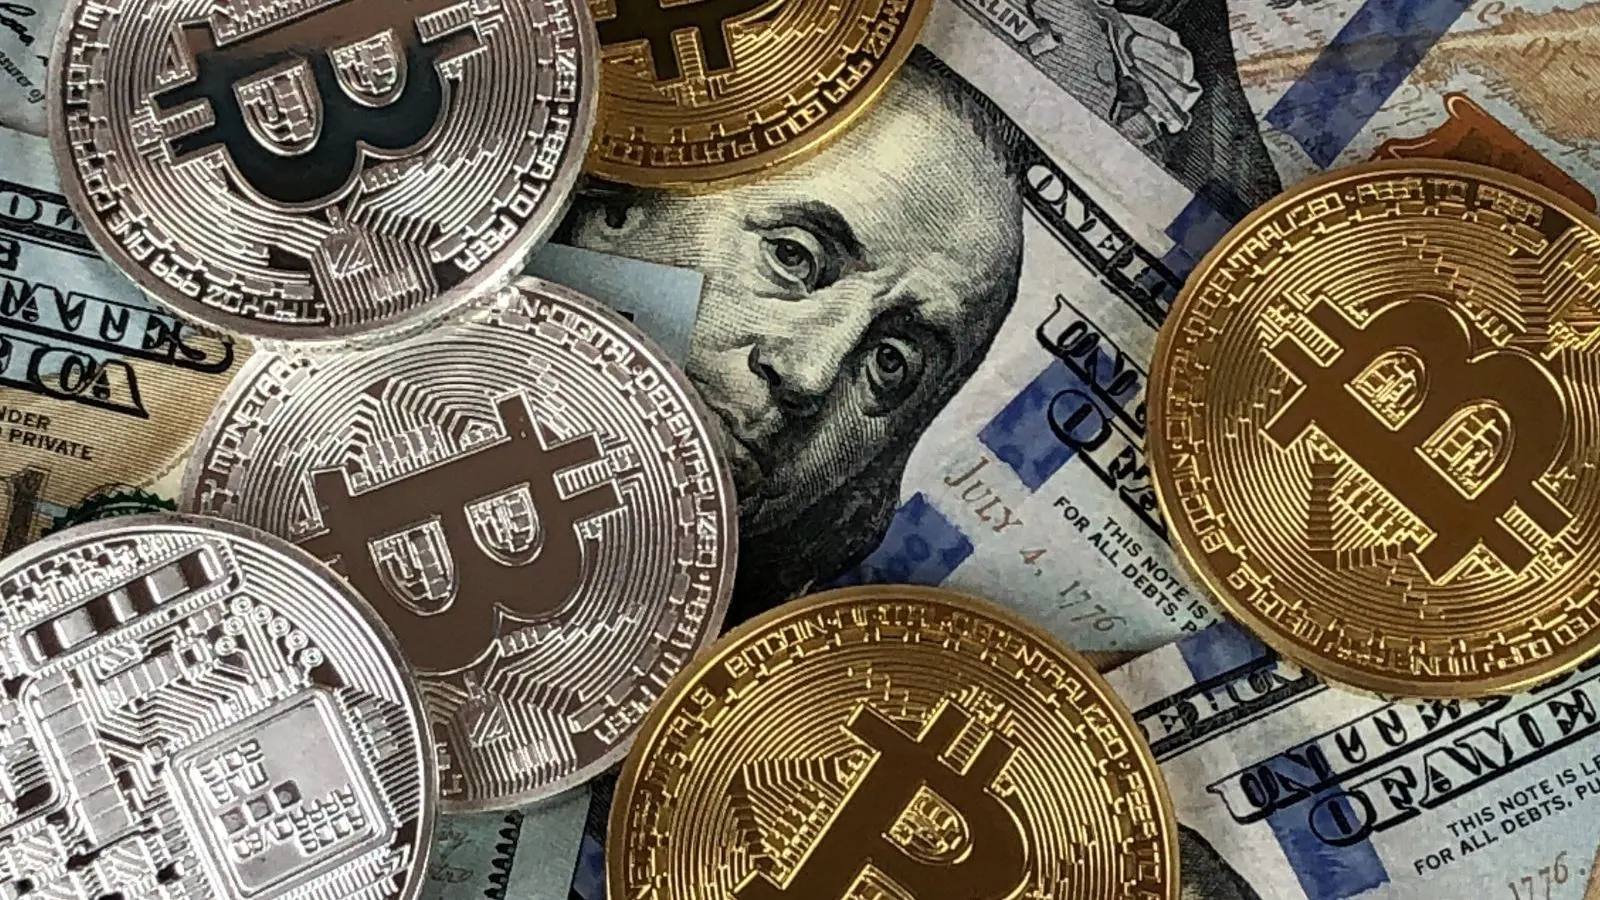 Pod znakiem zapytania stoi los rynku kryptowalut – coraz więcej krajów zabrania kopania bitcoinów ze względu na problemy z elektrycznością